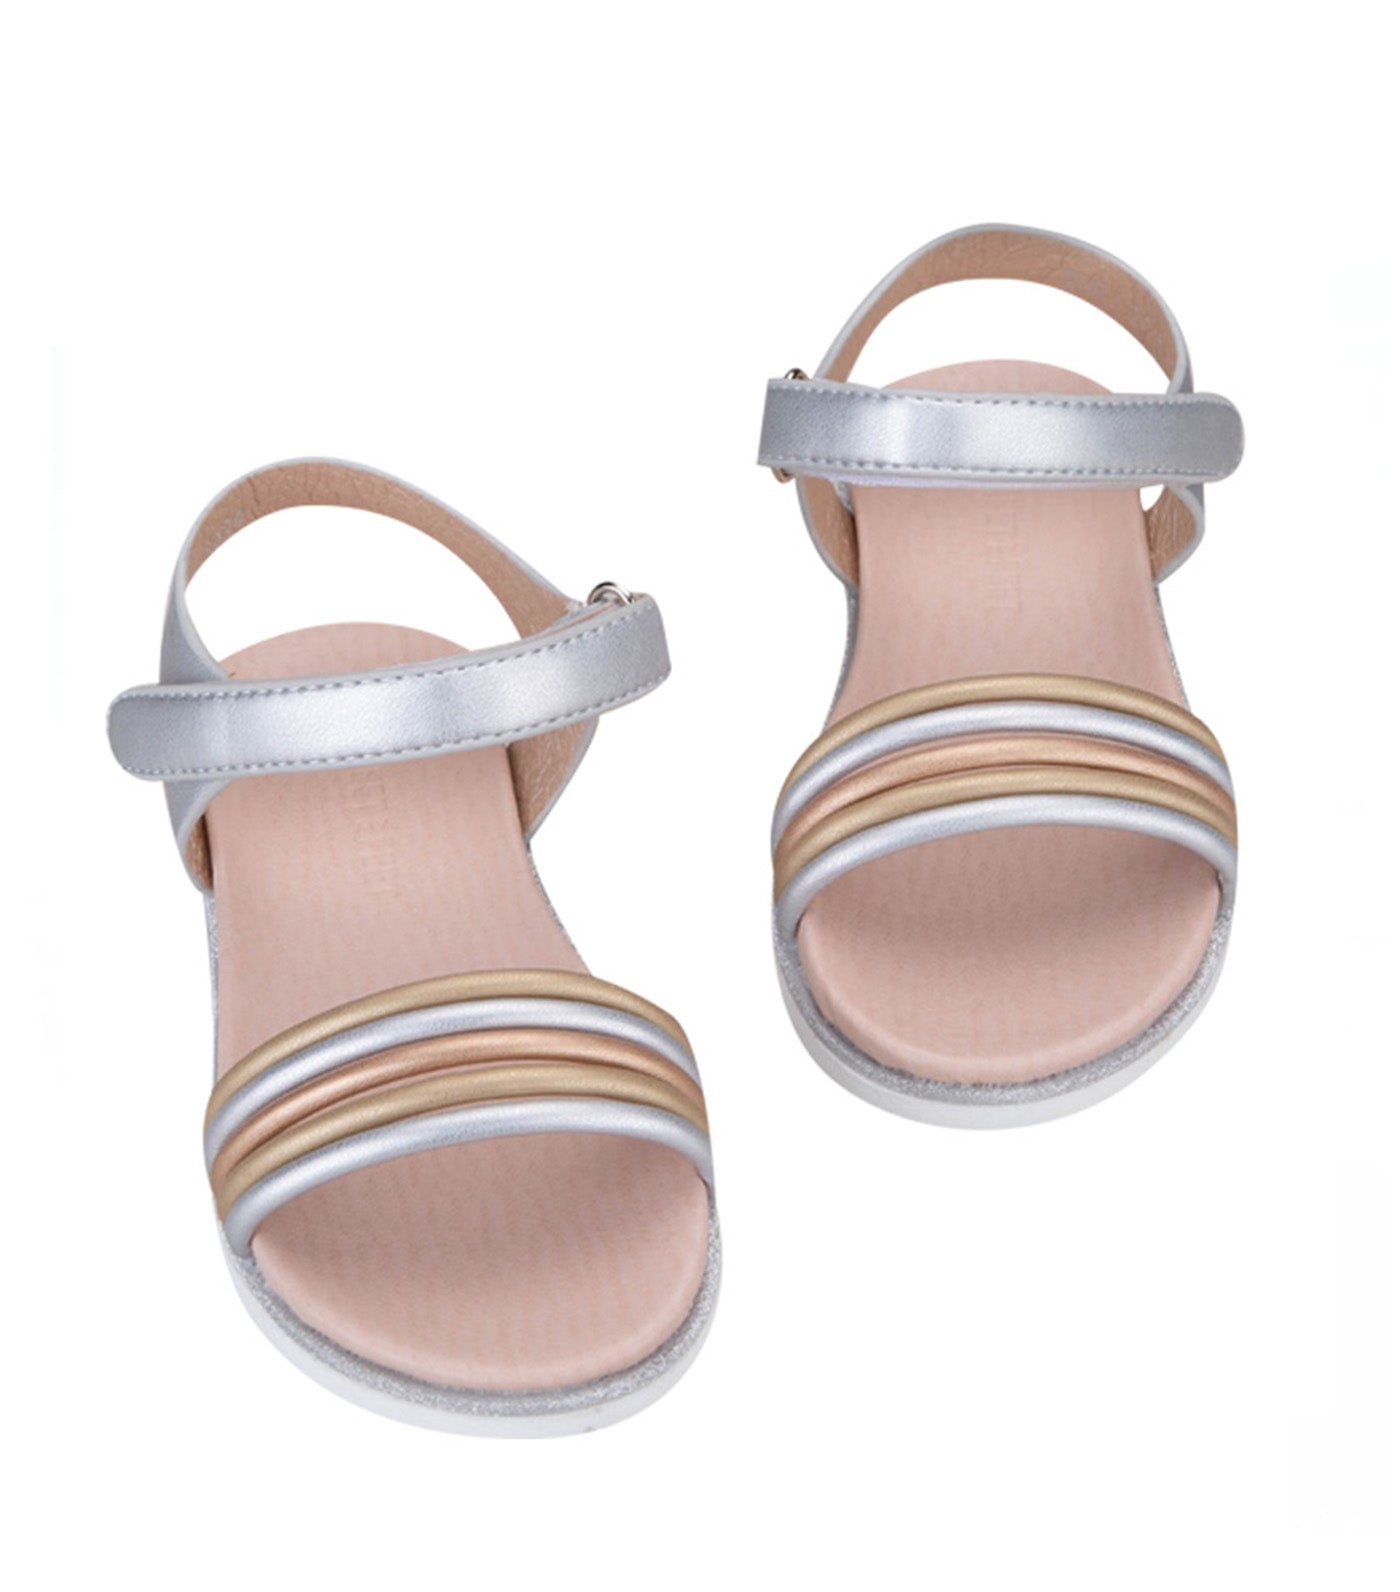 Suri Kids Sandals for Girls - Silver